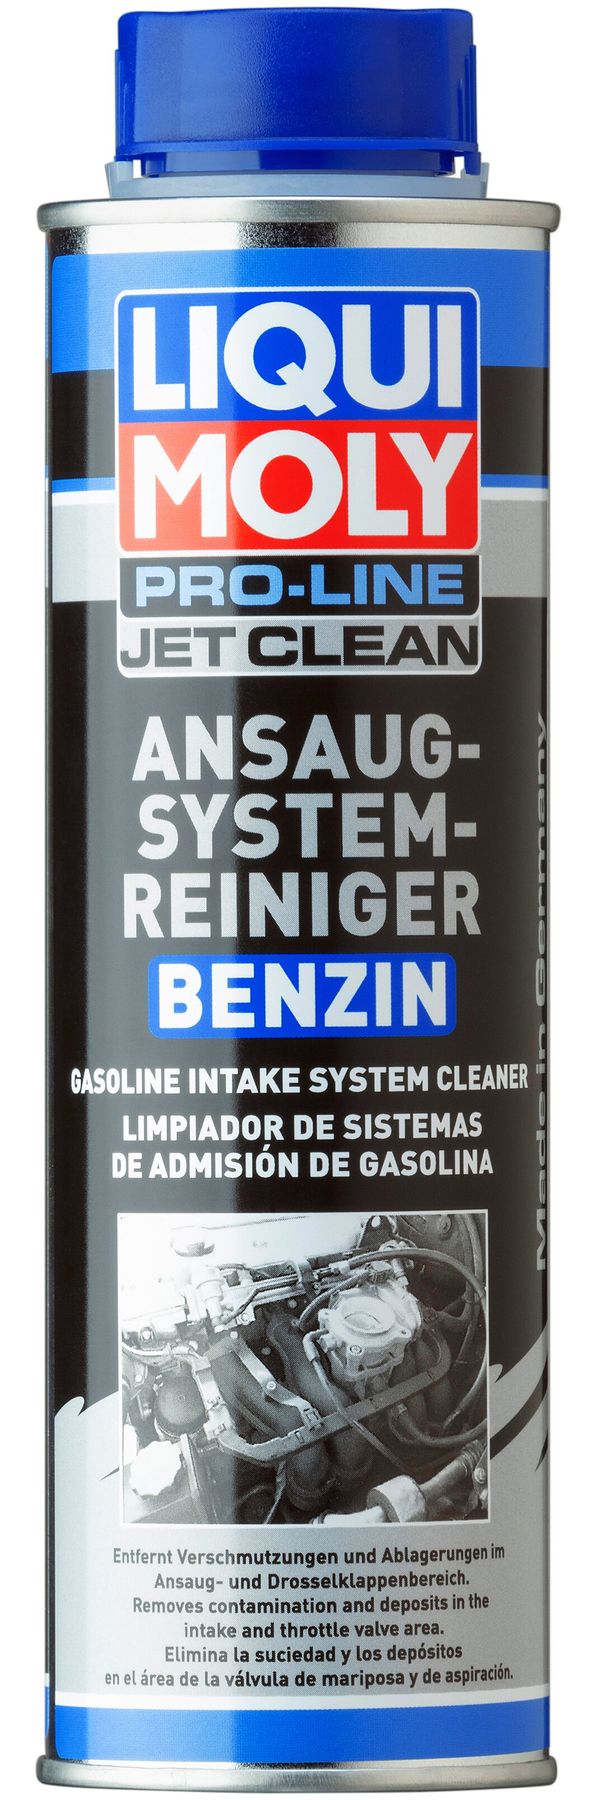 Pro-Line JetClean Ansaugsystemreiniger Benzin